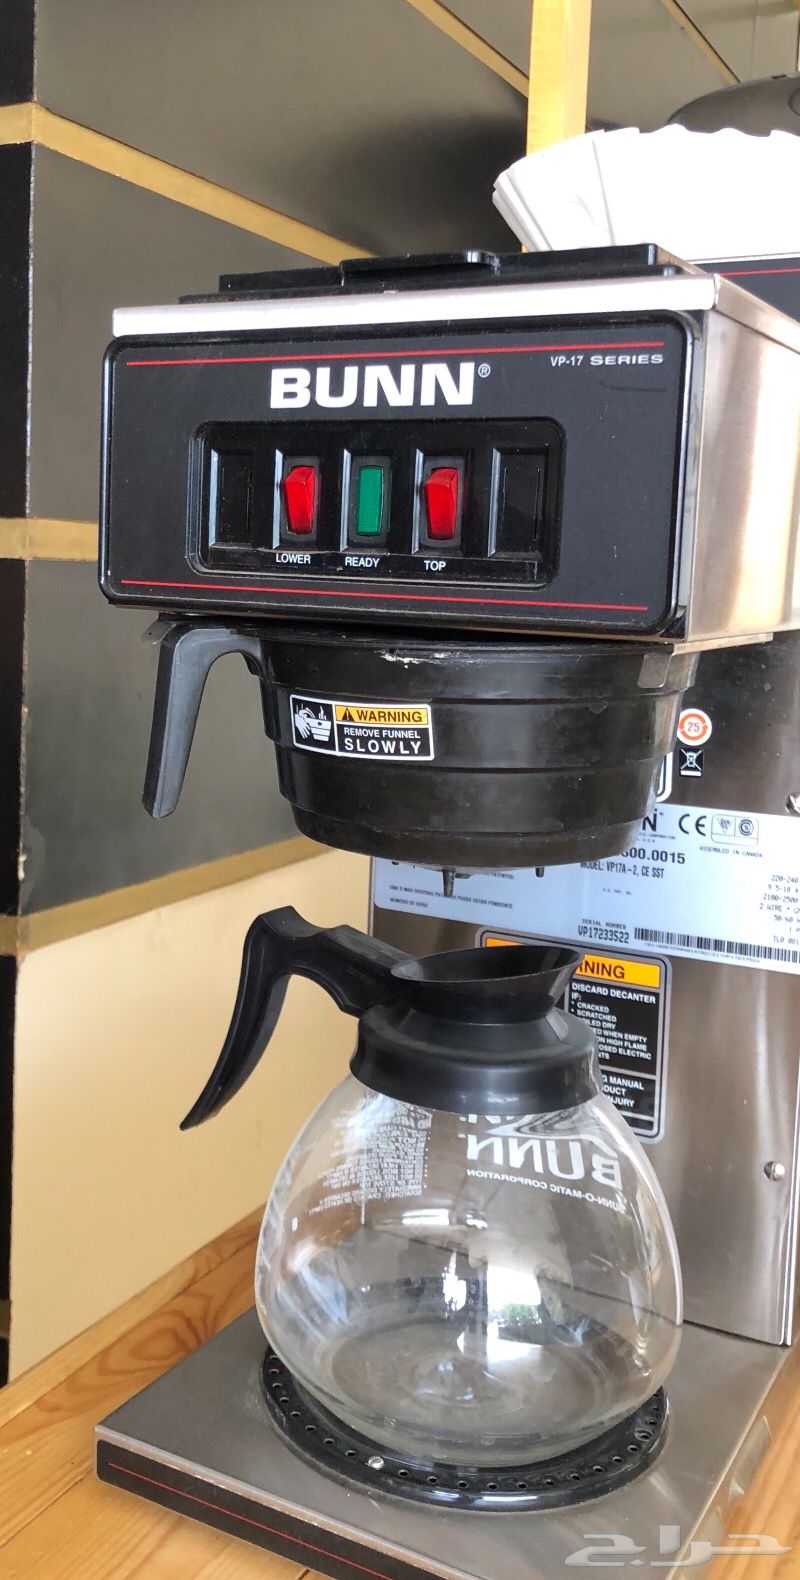 ماكينة قهوة امريكية Bunn للبيع حراج القهوة مجتمع القهوة